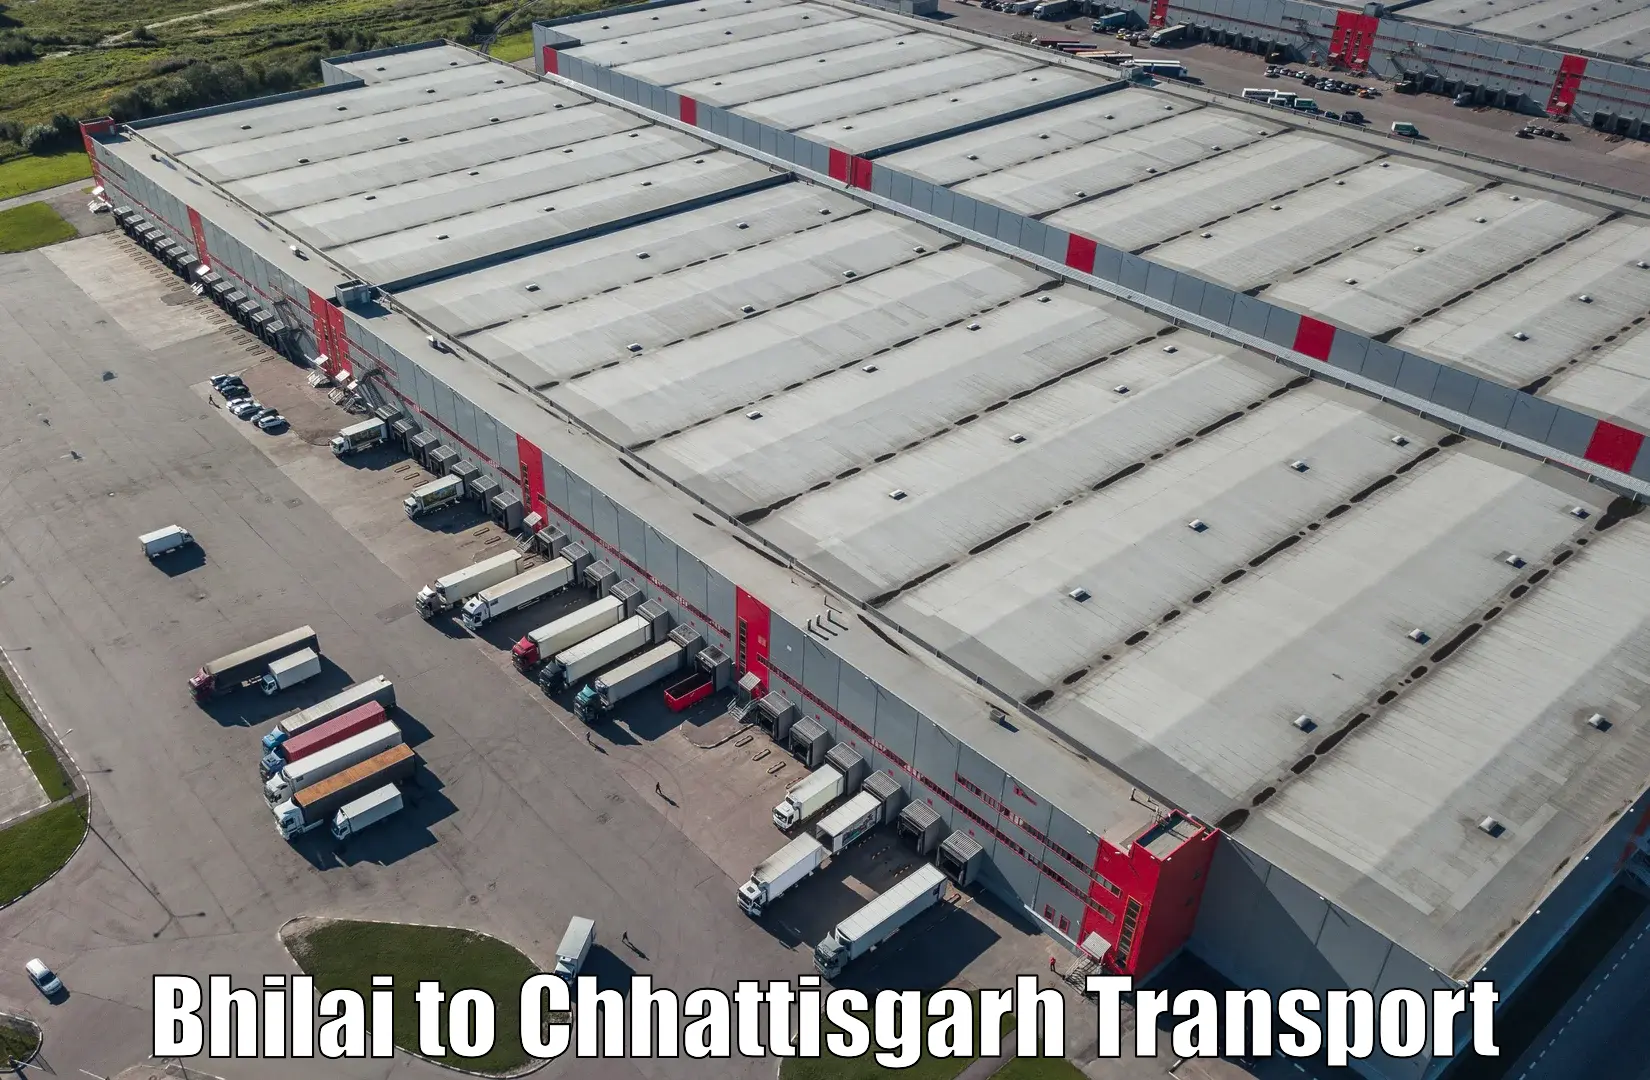 Furniture transport service Bhilai to Pathalgaon